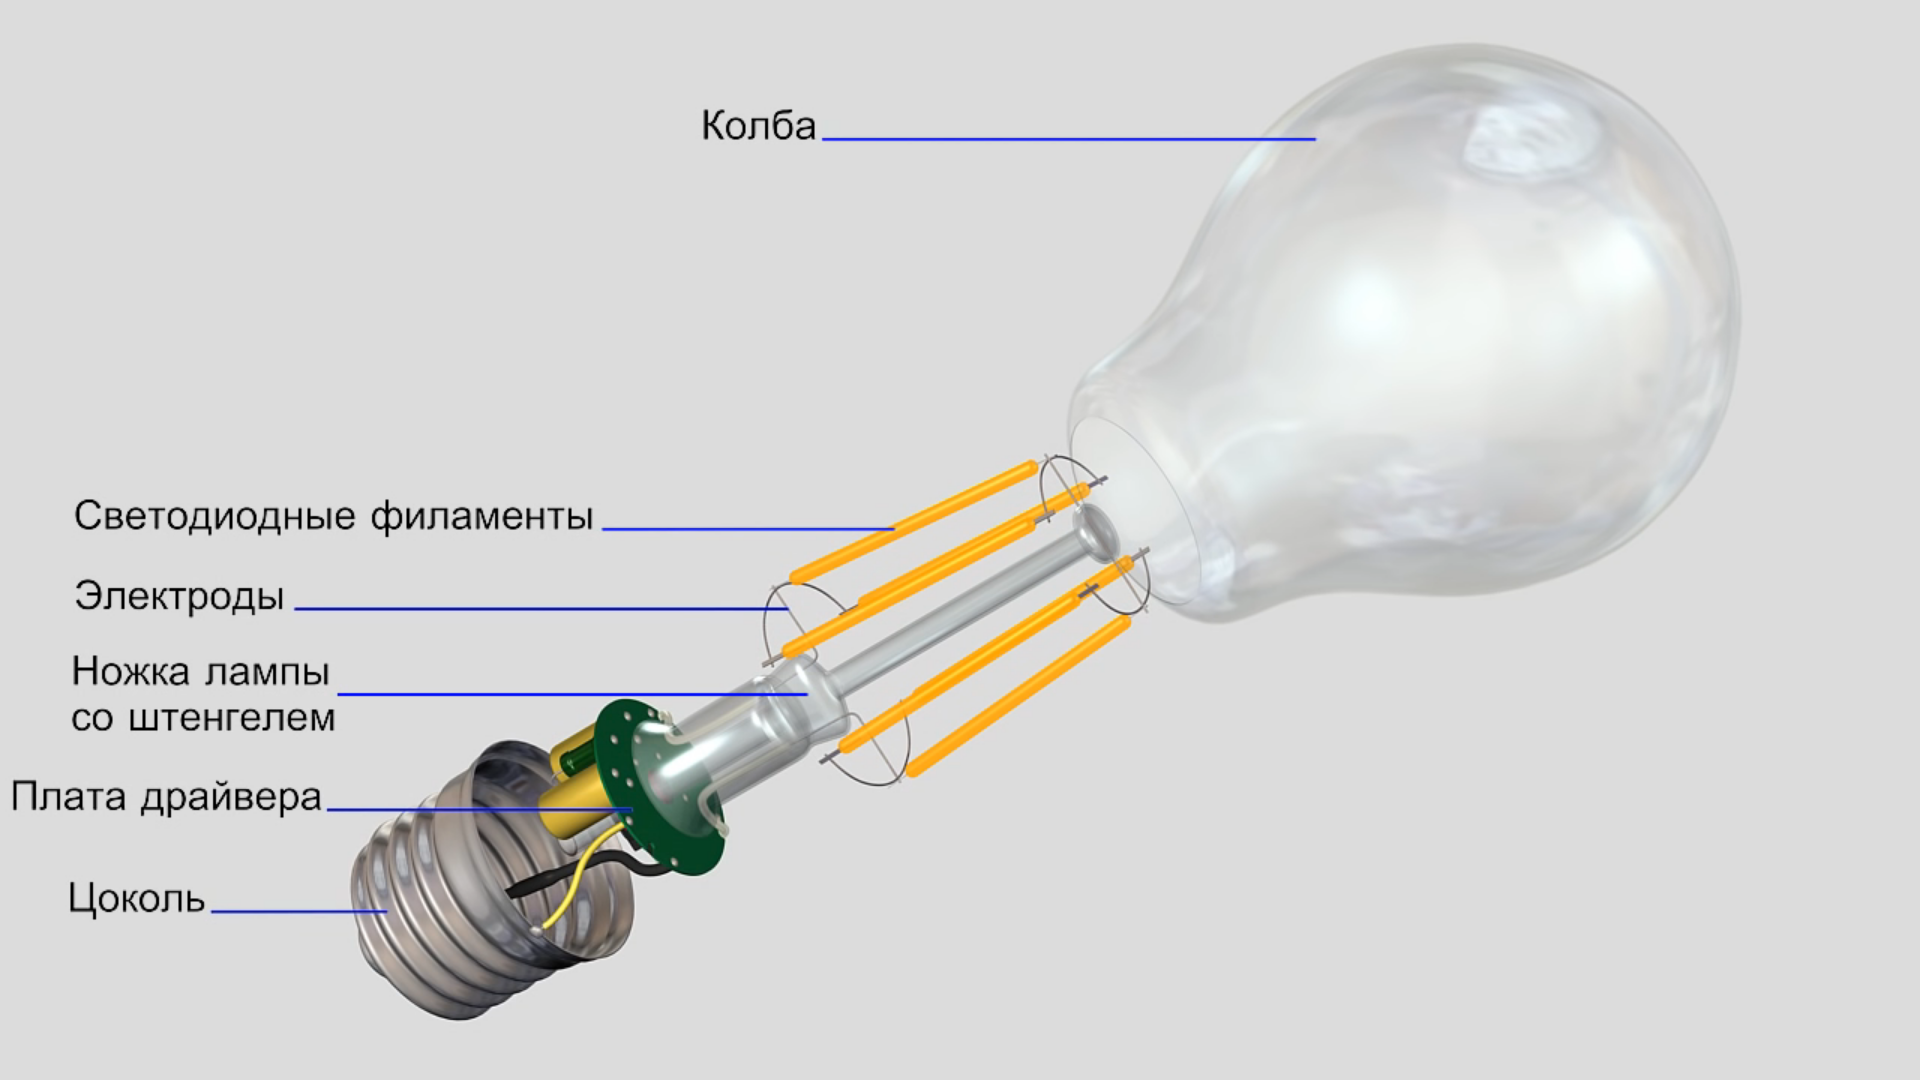 Светодиодная (филаментная) лампа